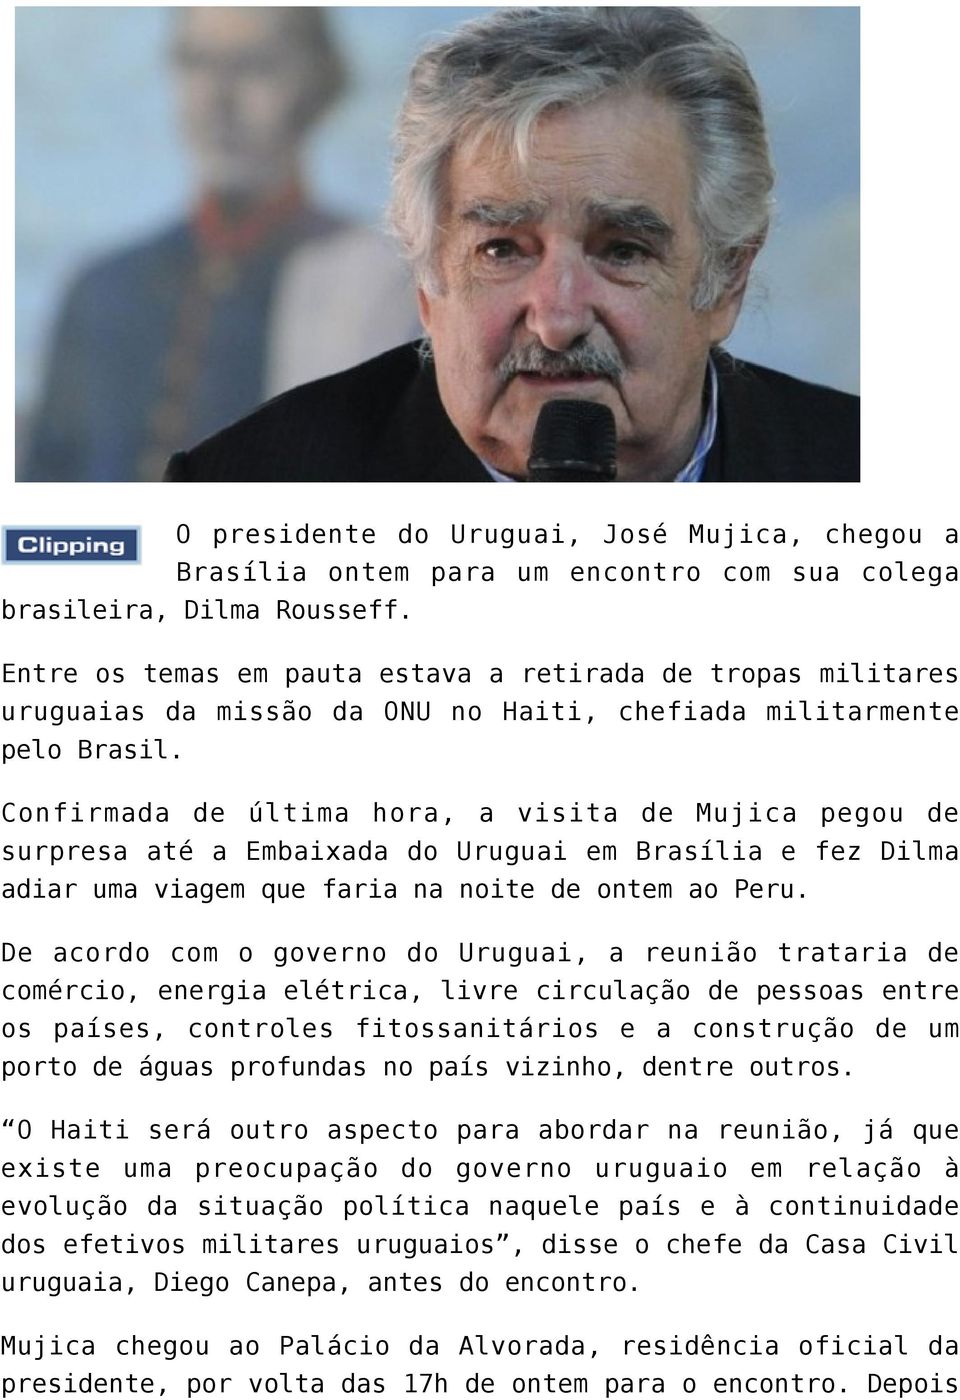 Confirmada de última hora, a visita de Mujica pegou de surpresa até a Embaixada do Uruguai em Brasília e fez Dilma adiar uma viagem que faria na noite de ontem ao Peru.